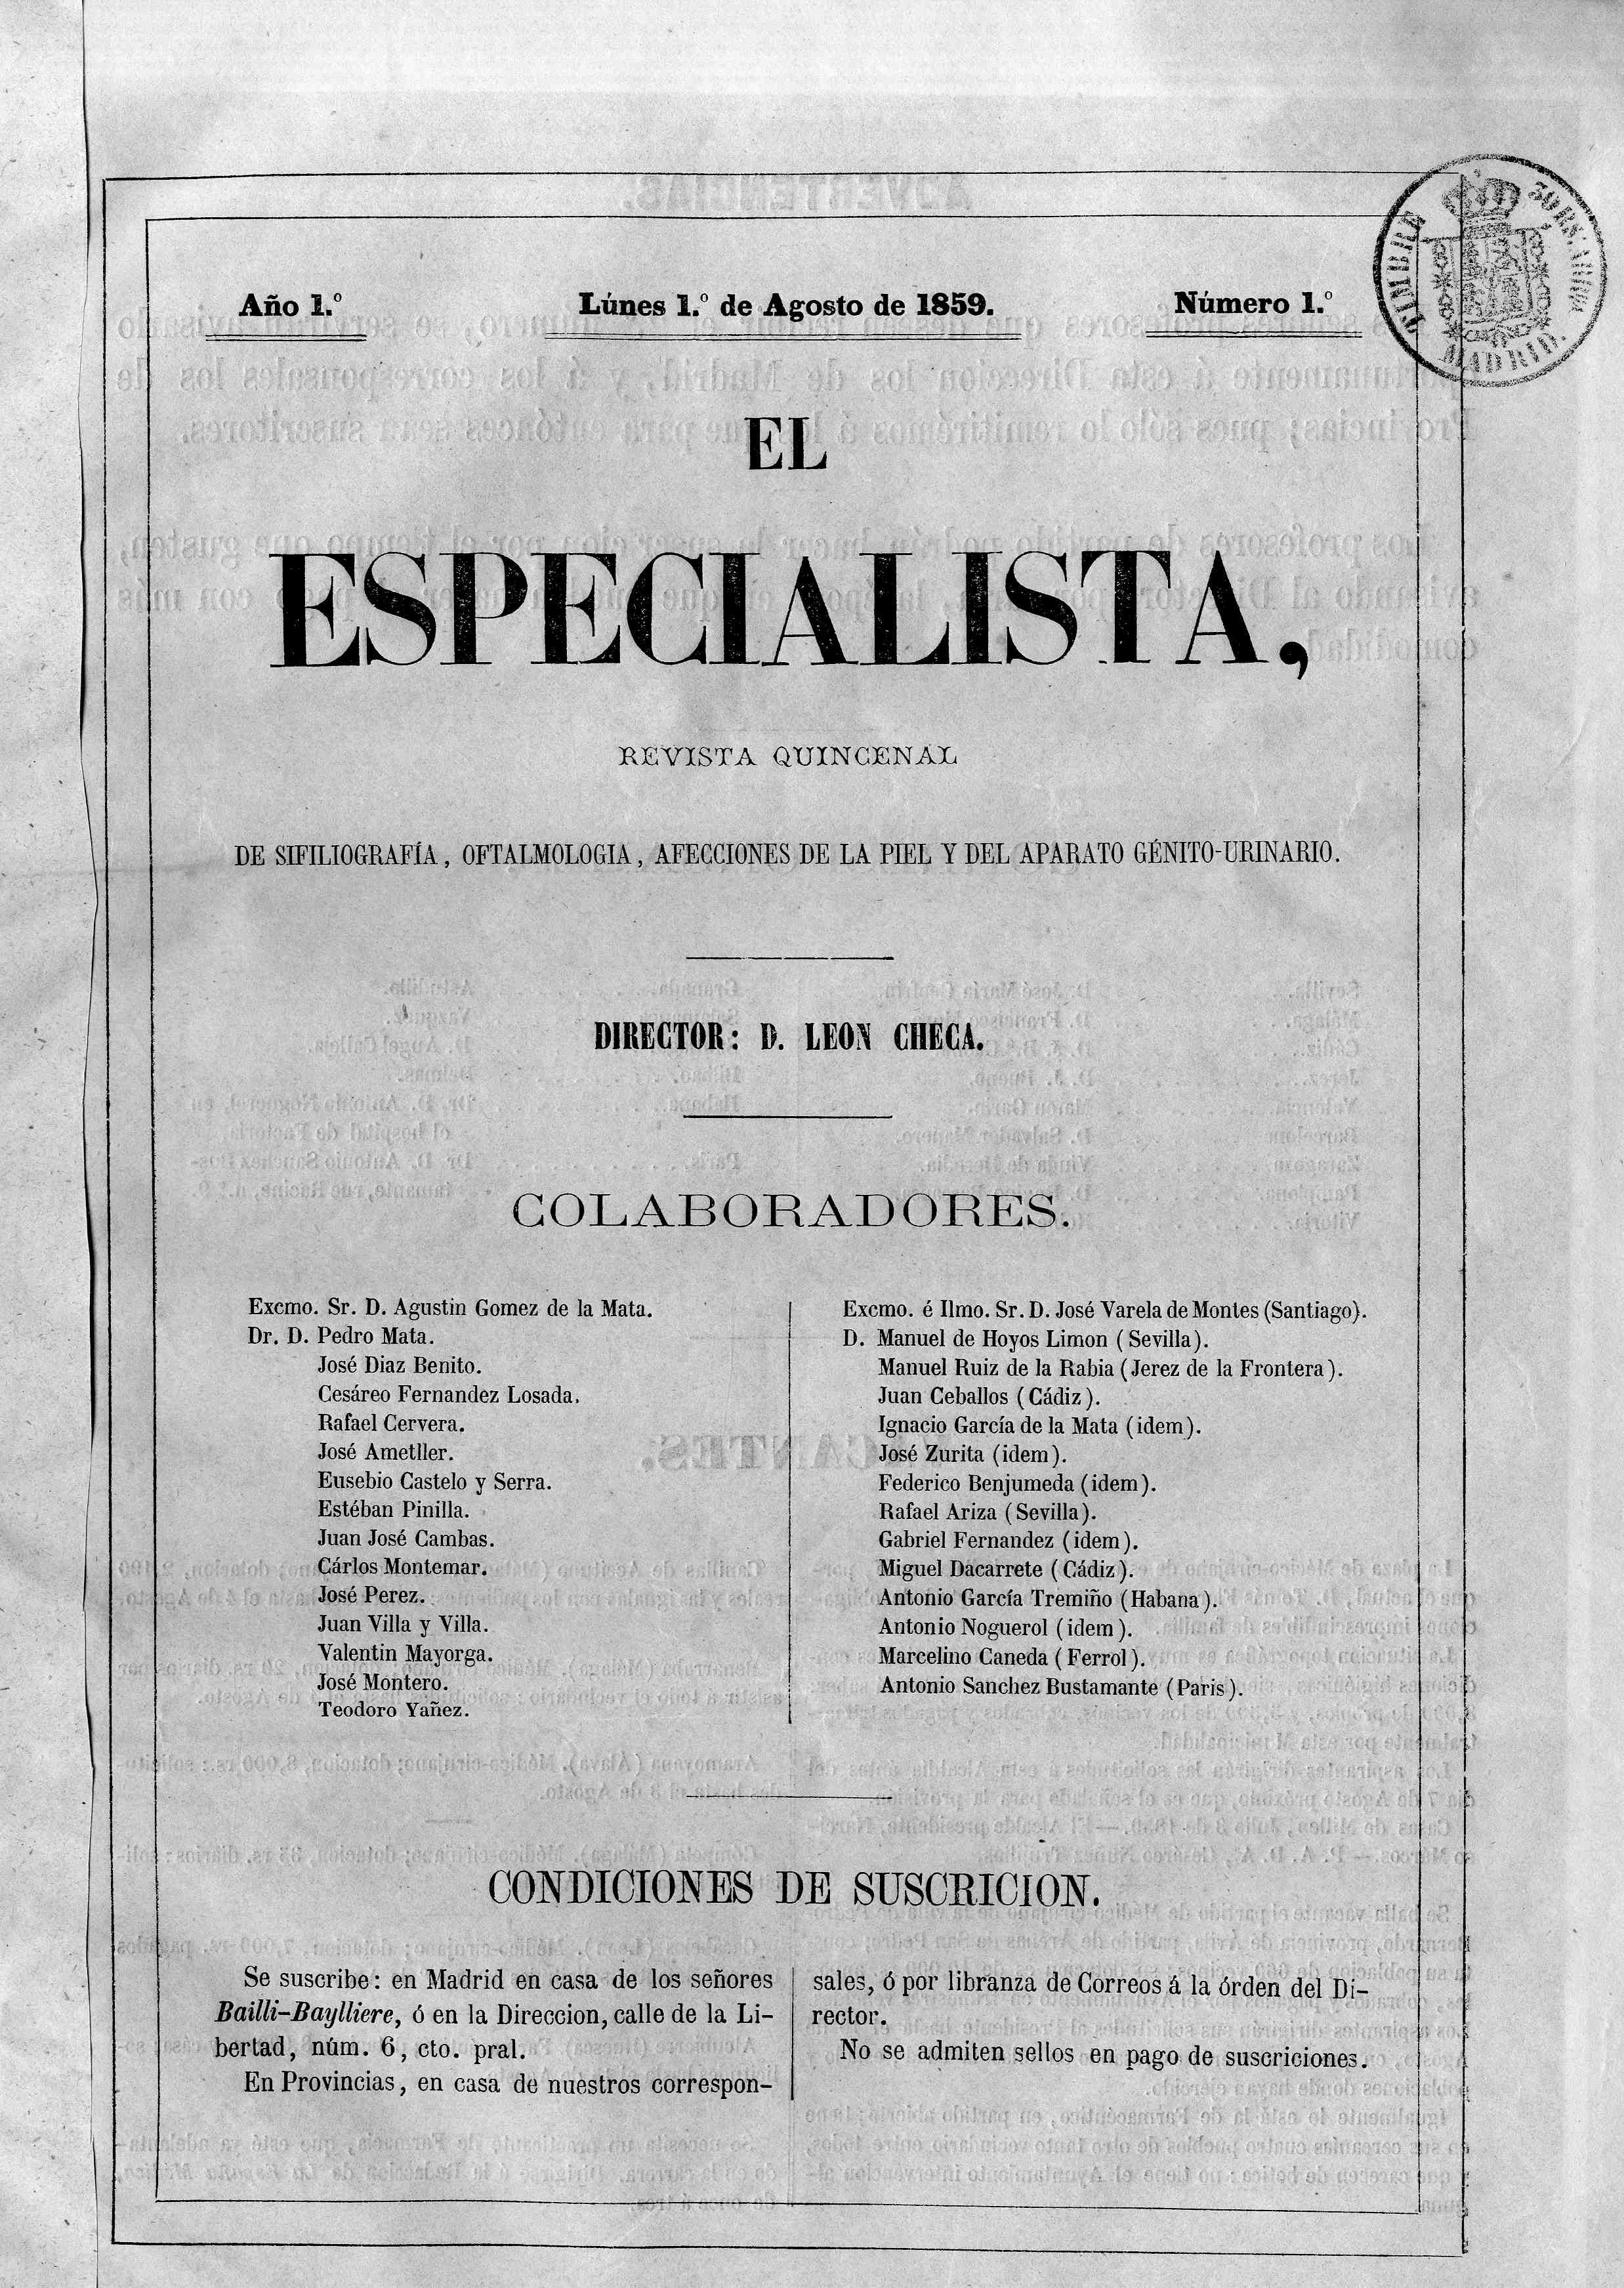 El especialista (Madrid), Año 1, 1 (1859)